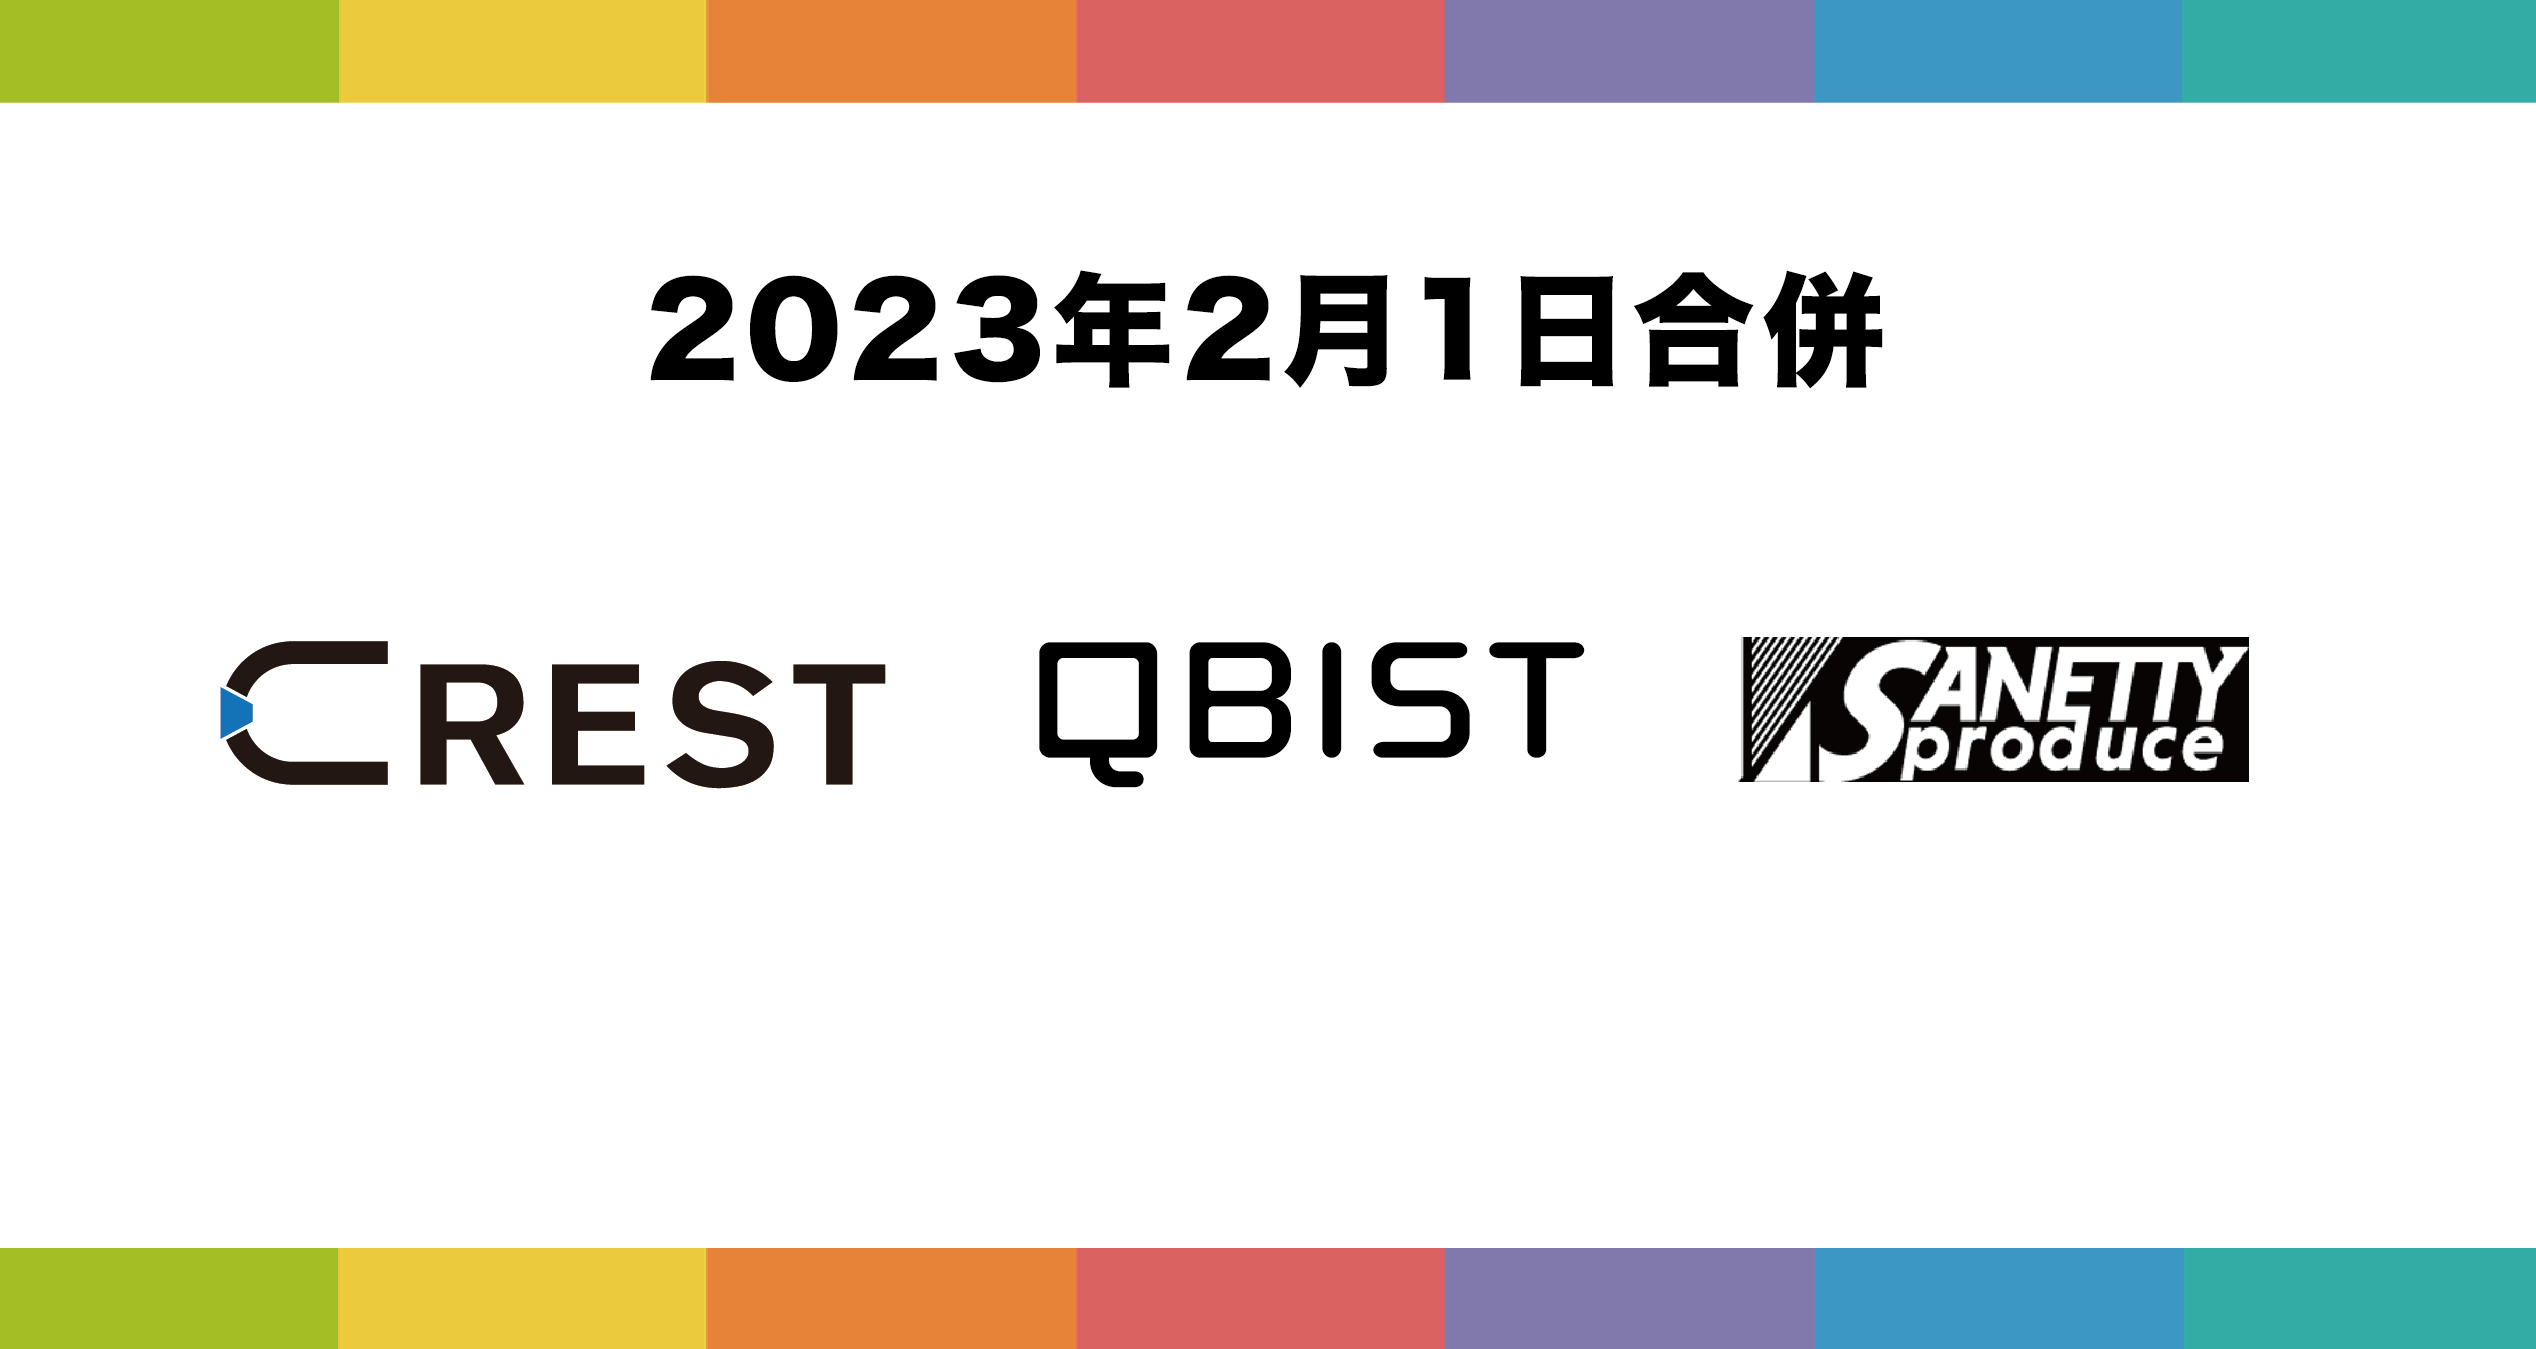 2023年2月1日、CREST、QBIST及びSANETTY Produceは合併し 